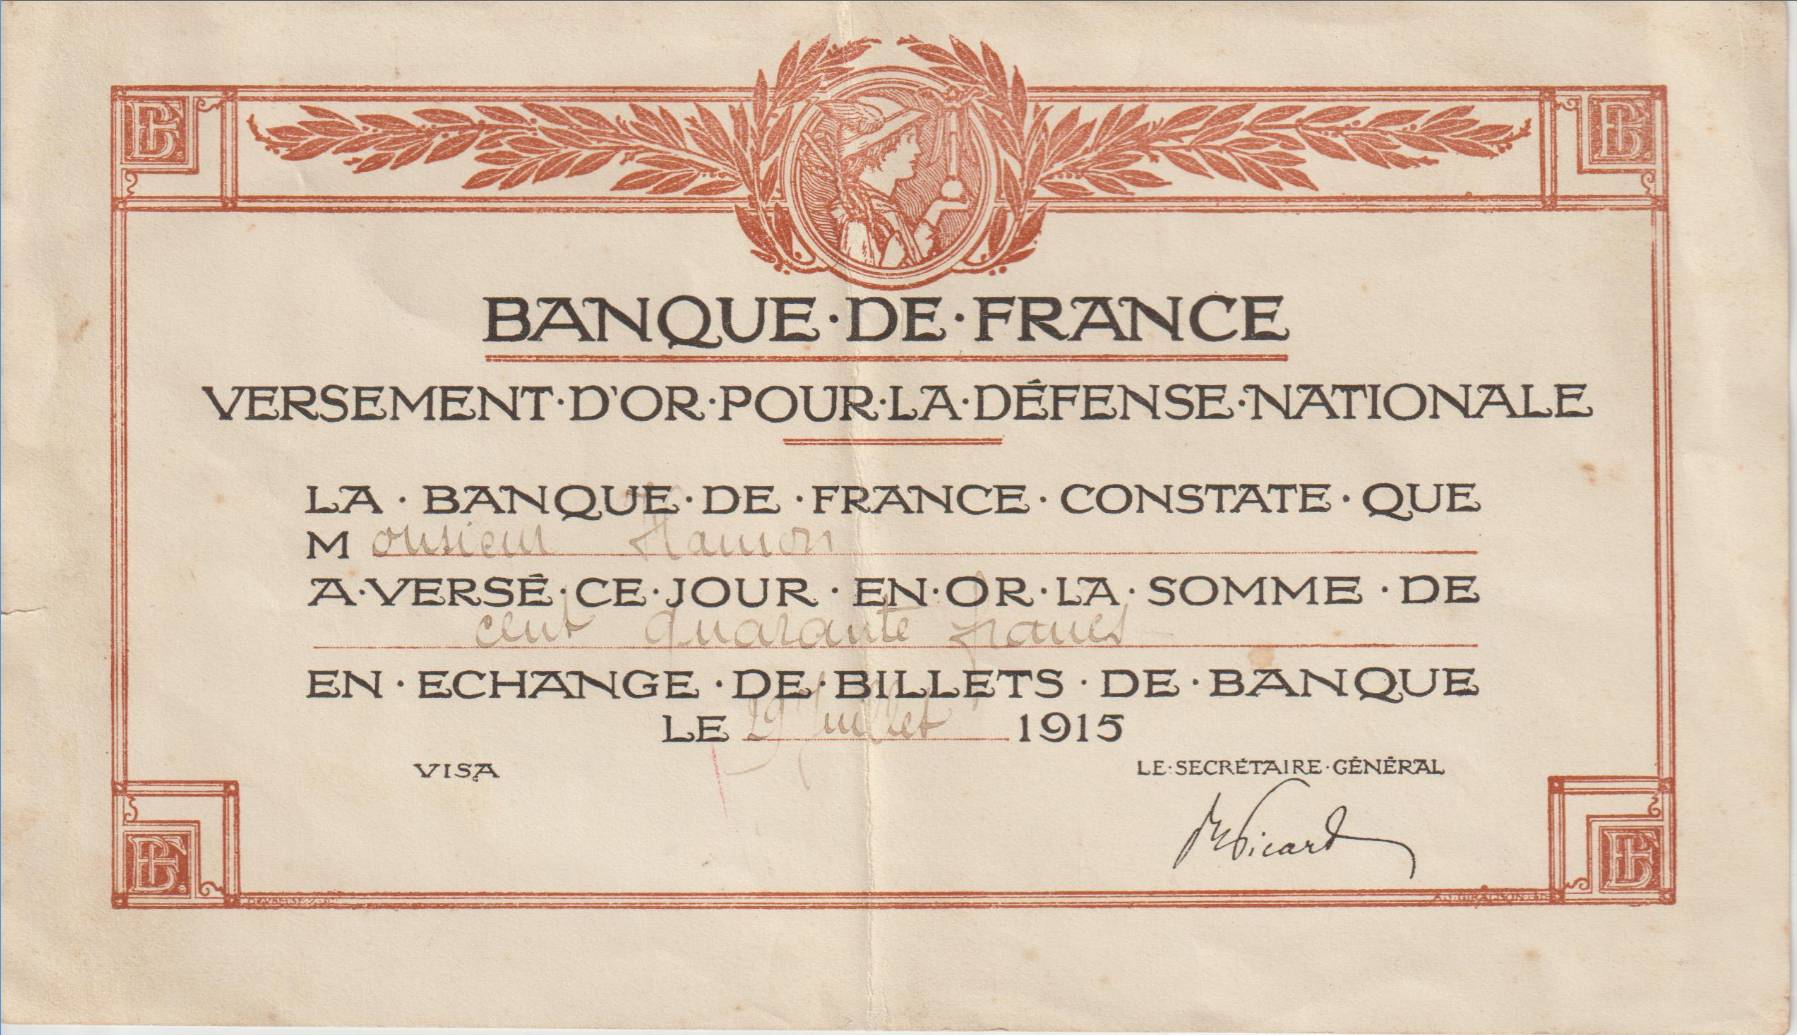 Banque de France.jpg